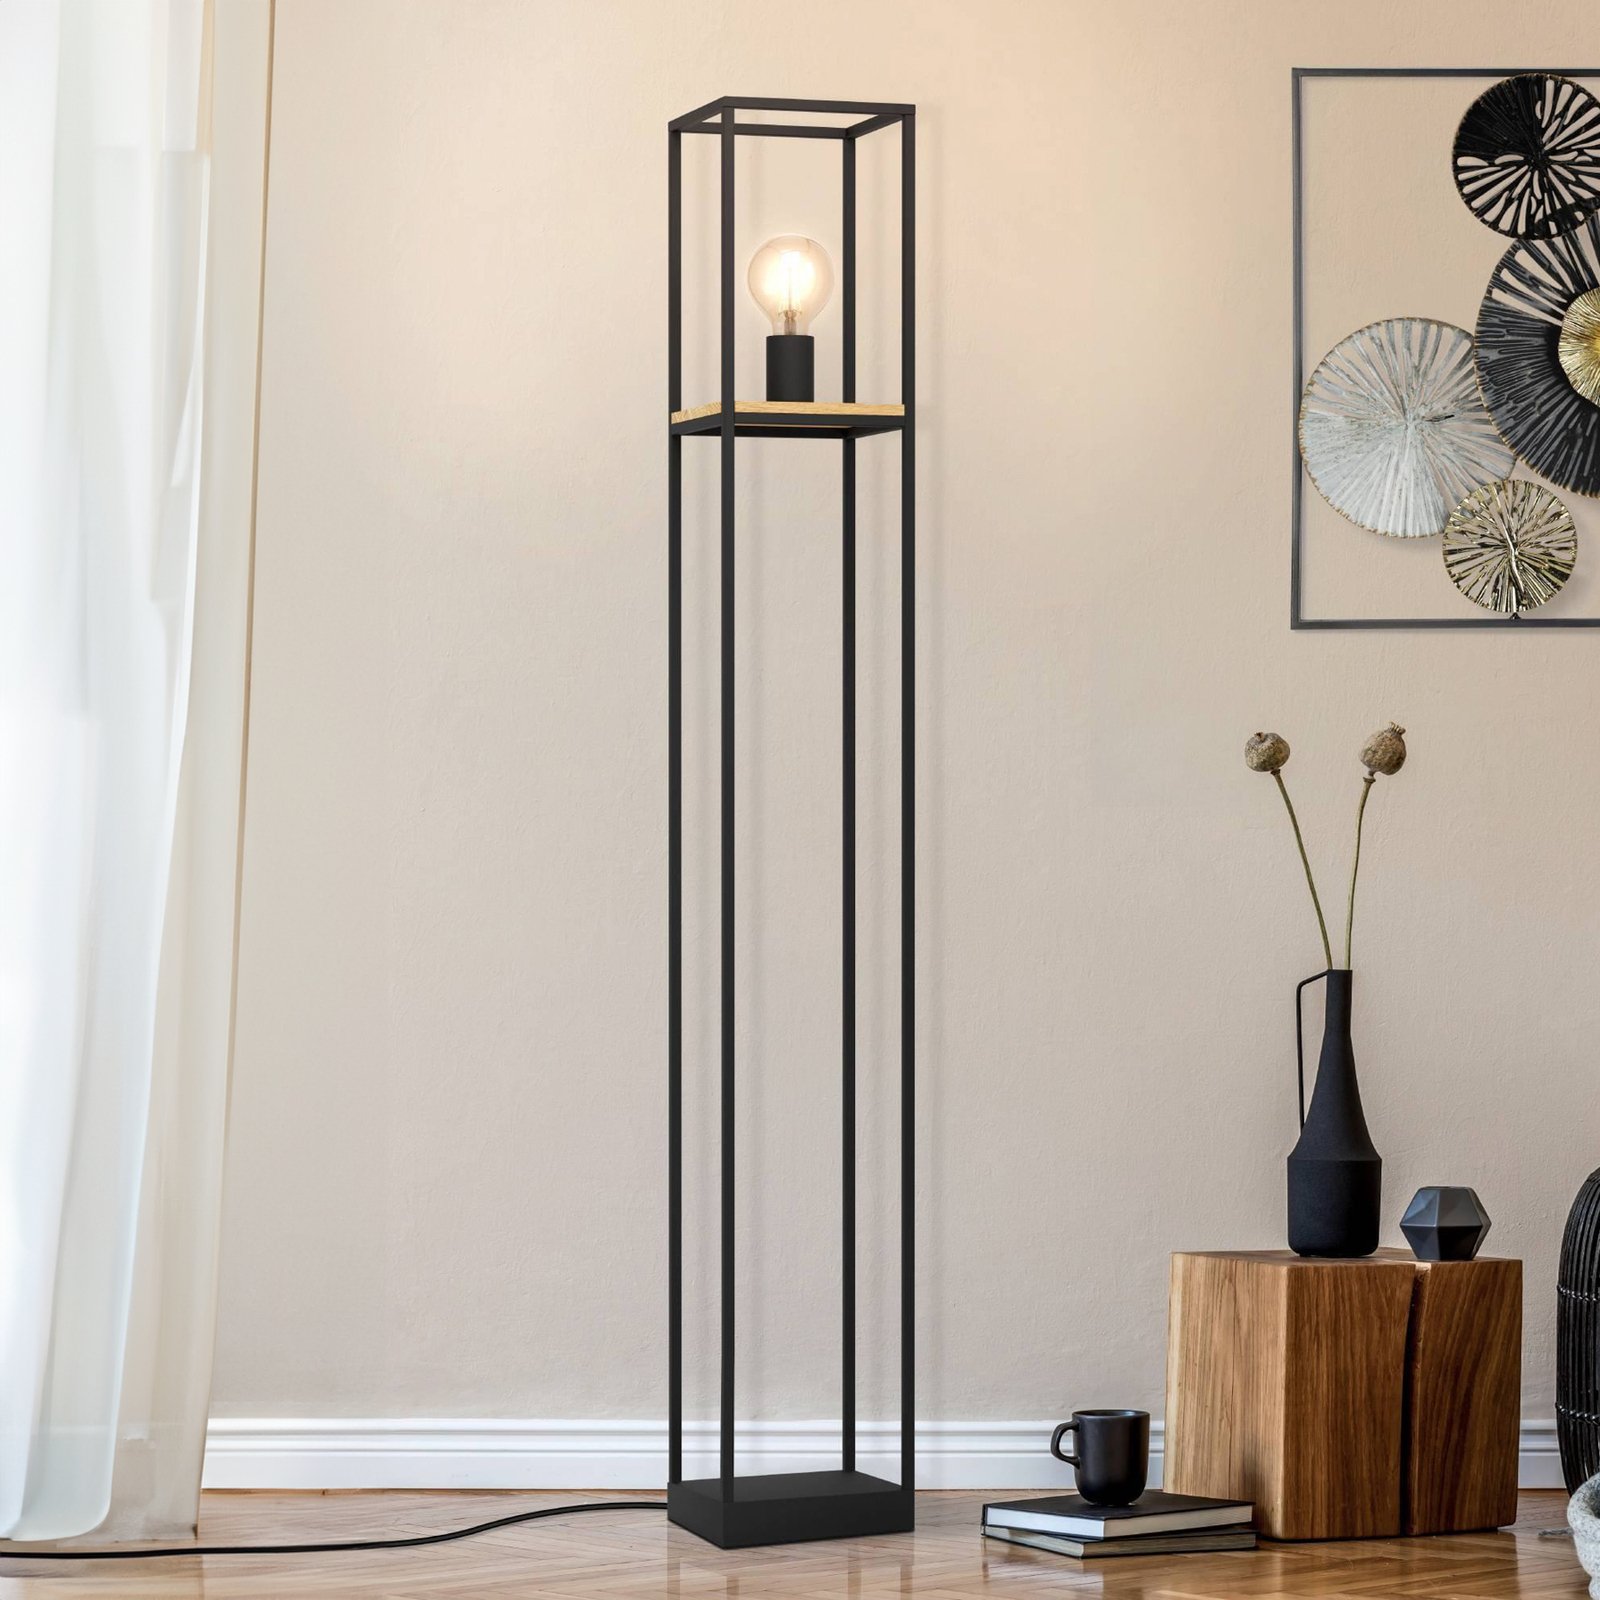 Lampe sur pied Libertad, hauteur 128,5 cm, noir/bois, acier